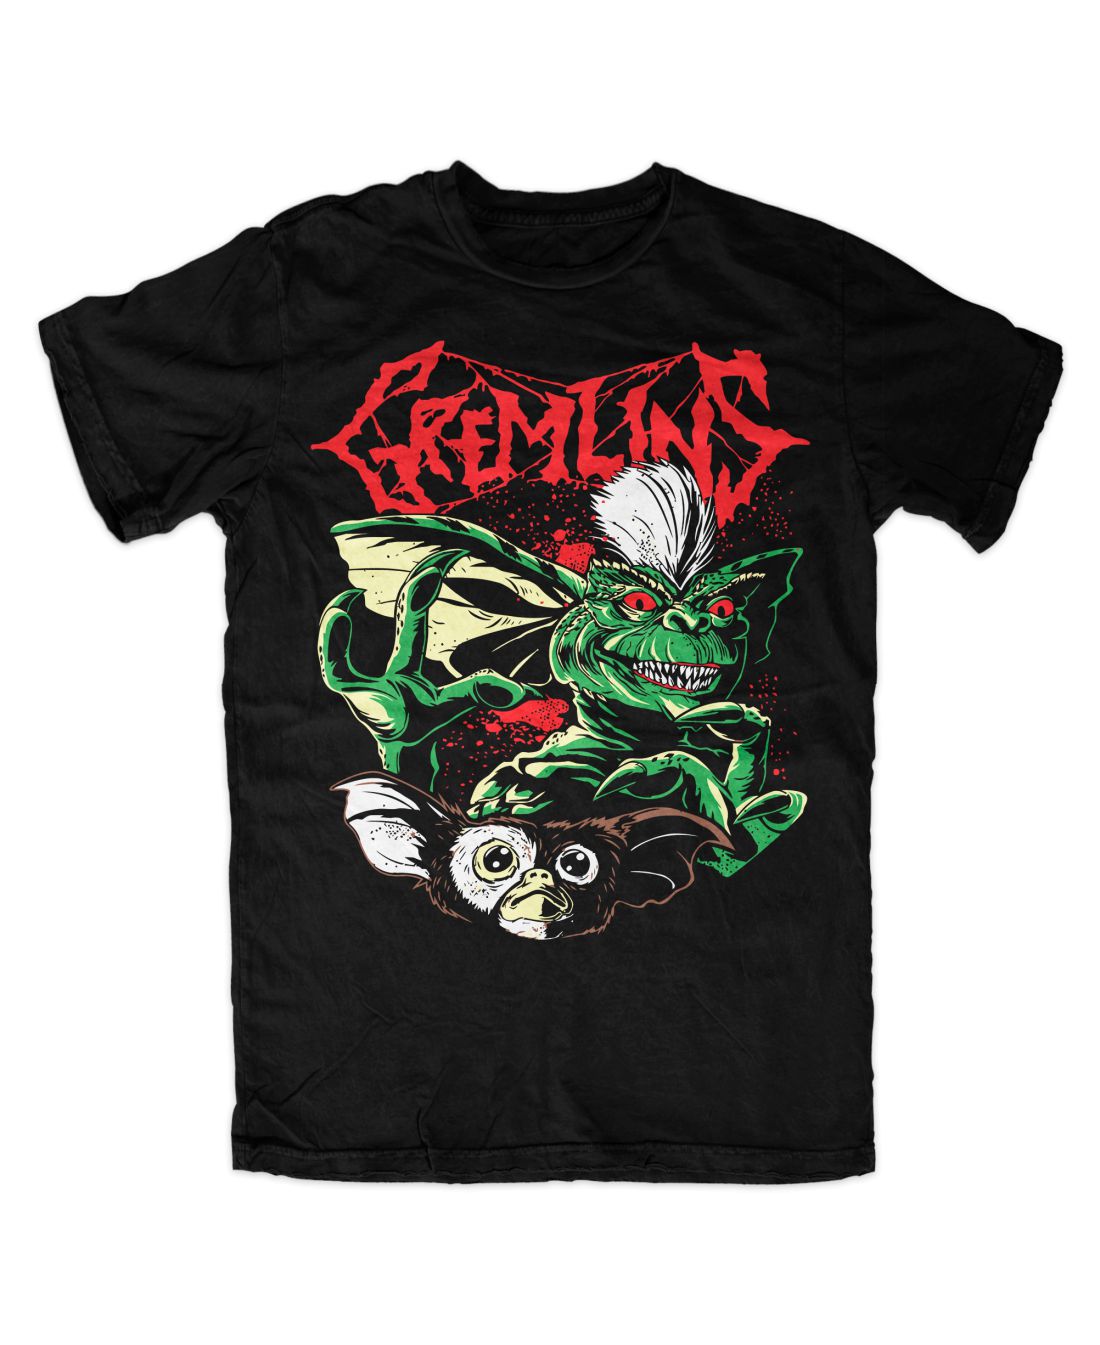 Gremlins 001 metal series